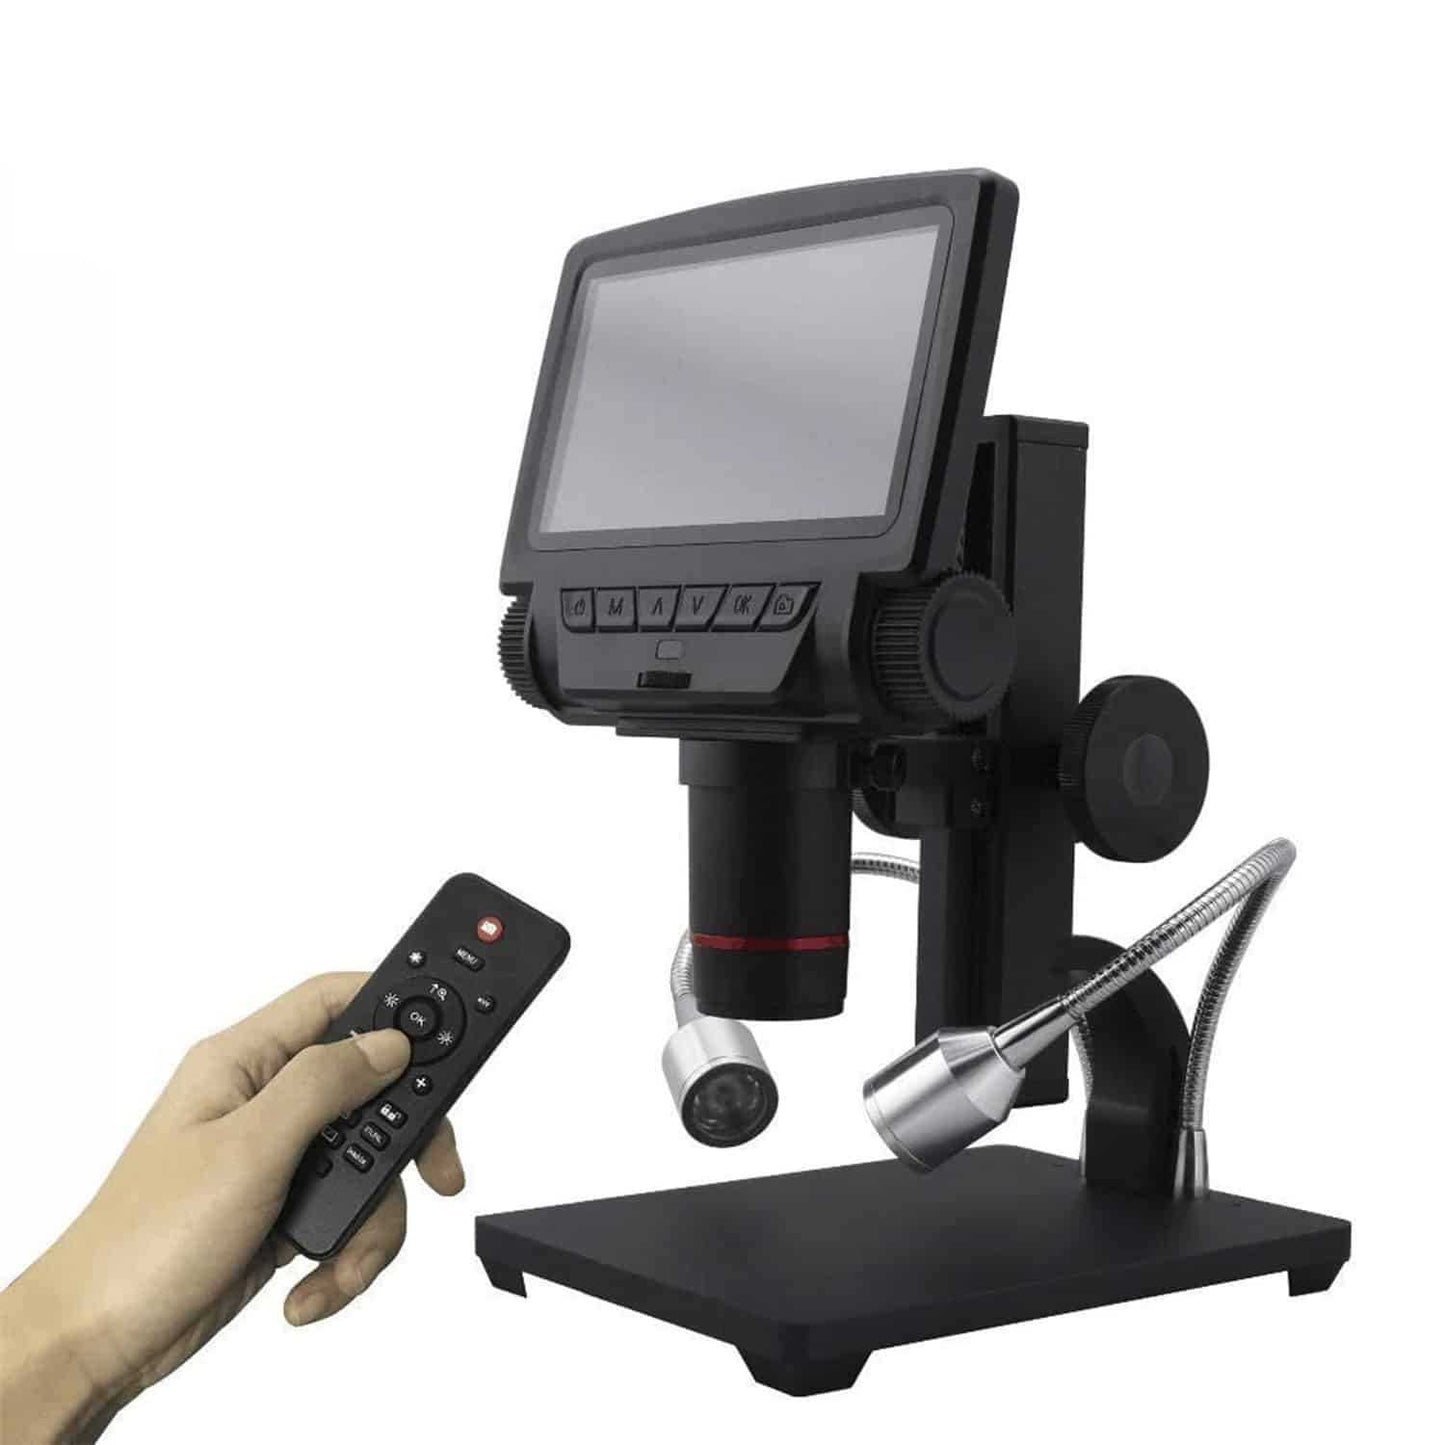 Andonstar ADSM301 080P HDMI Digital Microscope - Andonstar